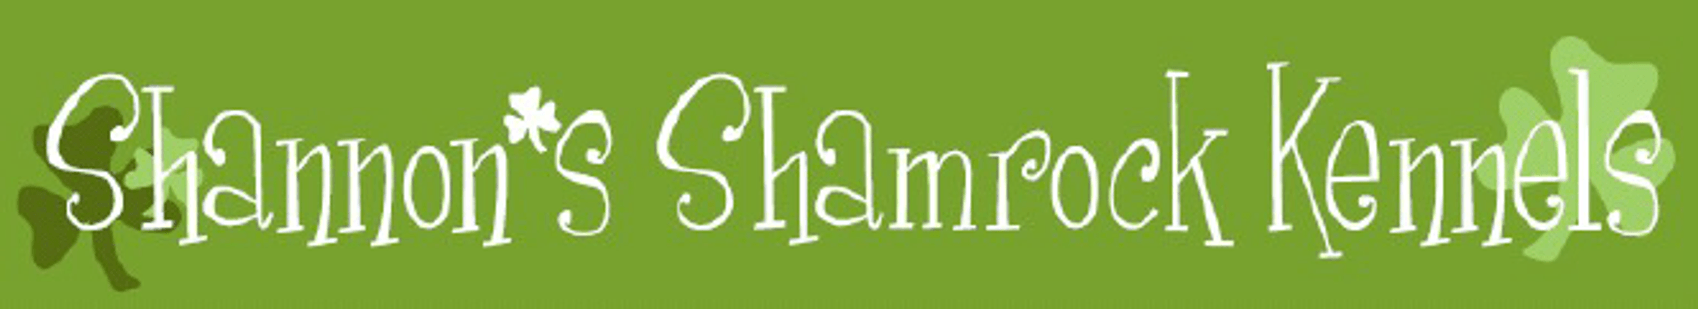 Shannon's Shamrock Kennels